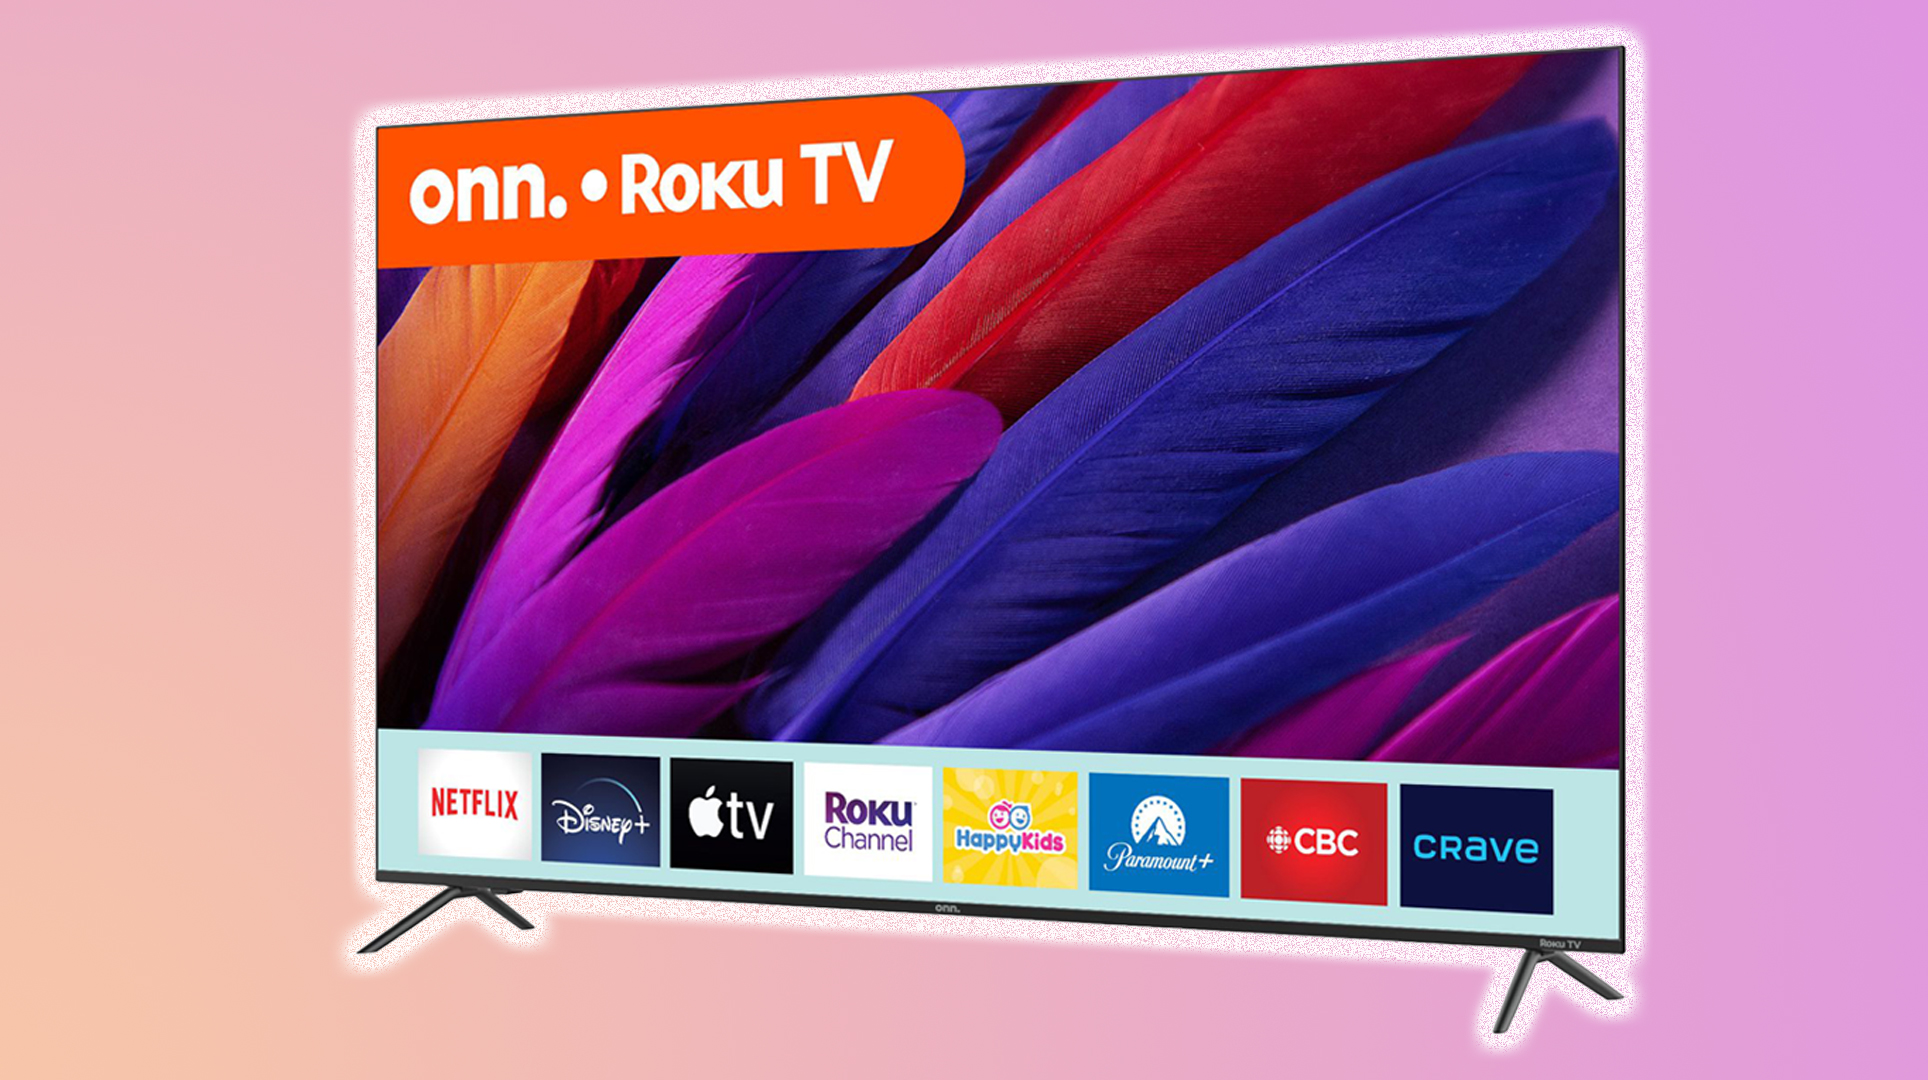 Walmart lanza nuevos televisores de la marca Onn en asociación con Roku